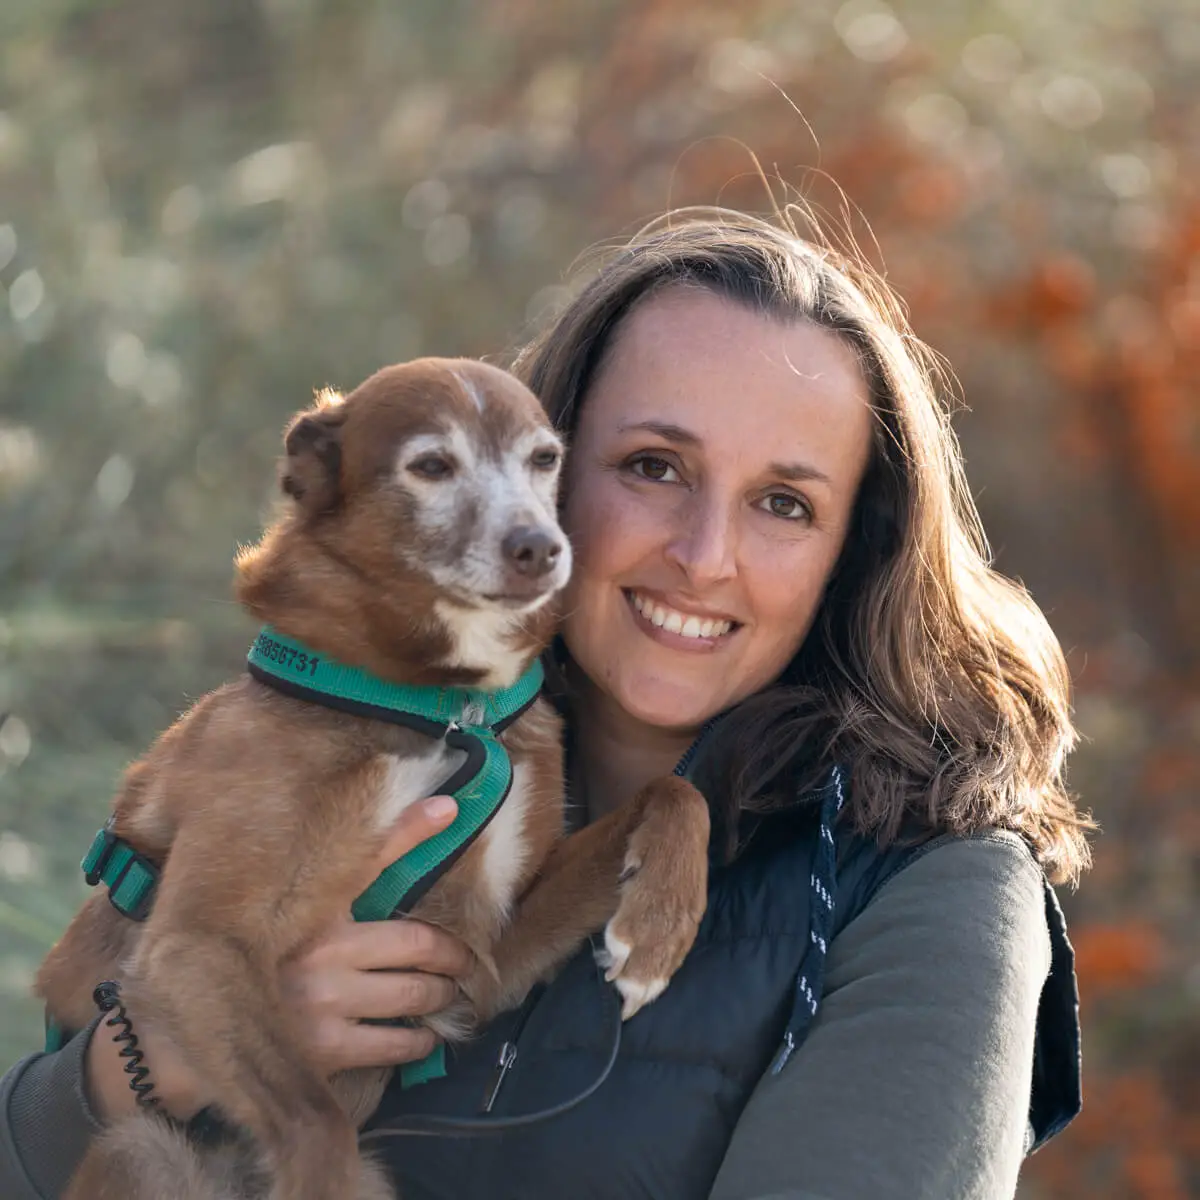 Gutschein für ein Fotoshooting mit Hund als Geschenk